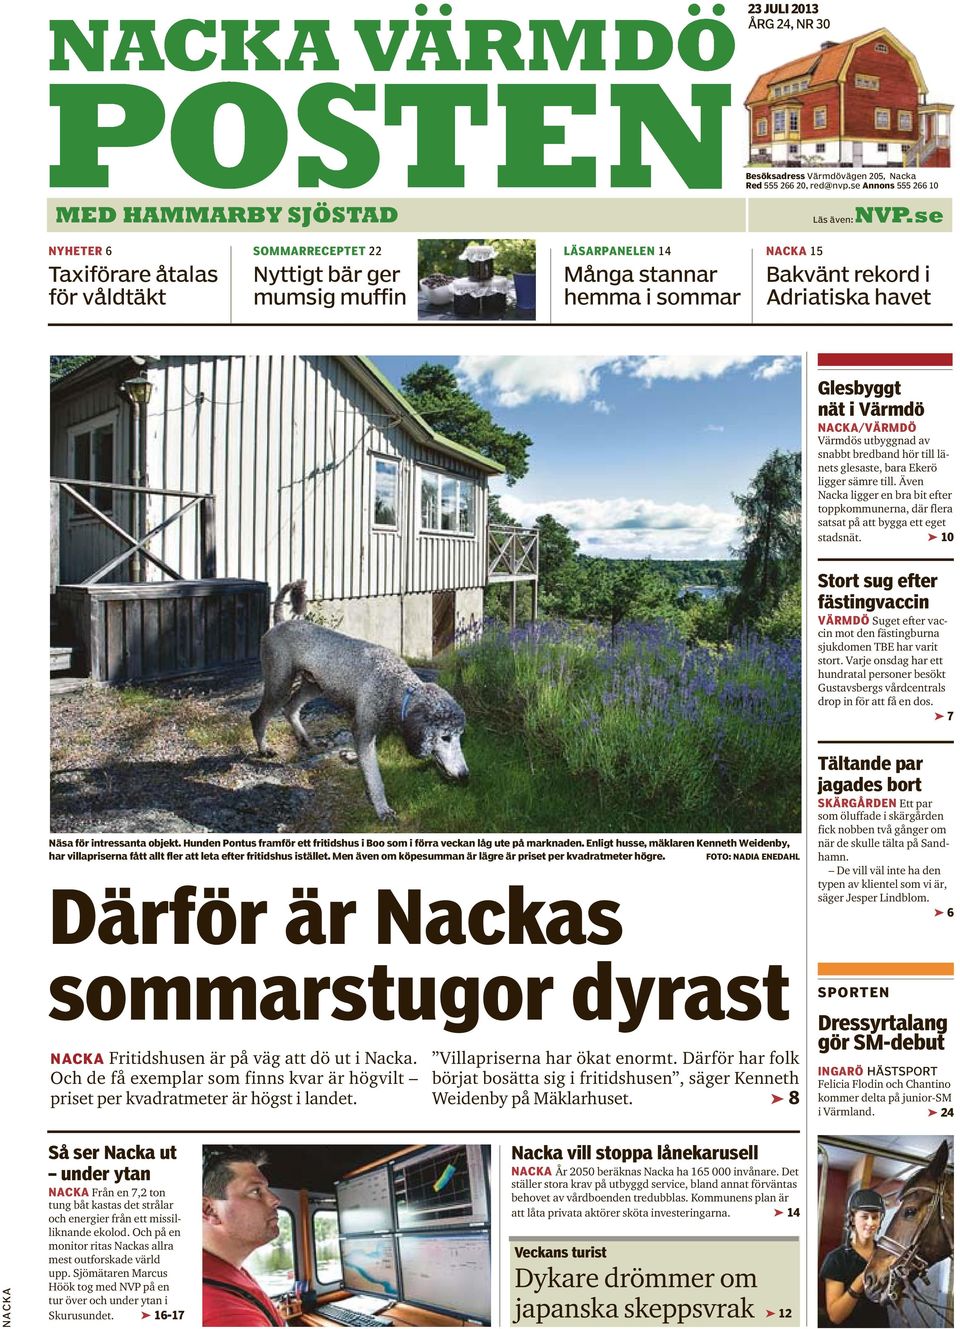 Värmdö NACKA/VÄRMDÖ Värmdös utbyggnad av snabbt bredband hör till länets glesaste, bara Ekerö ligger sämre till.